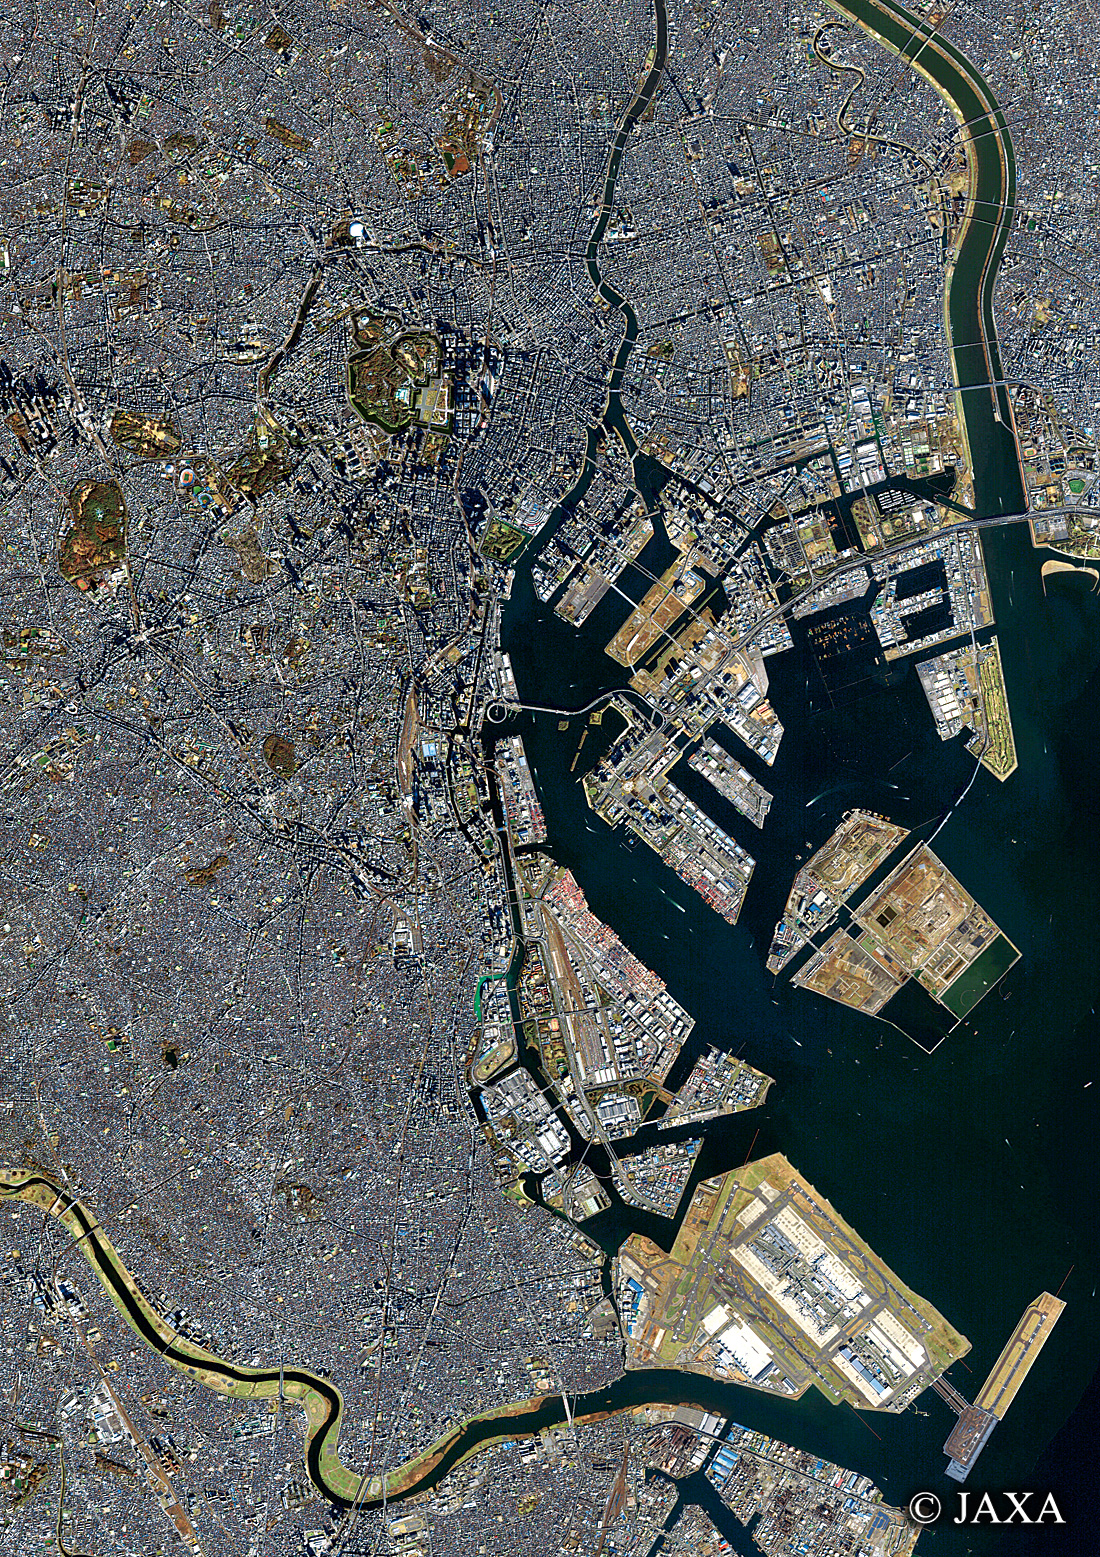 だいちから見た日本の都市 東京:衛星画像